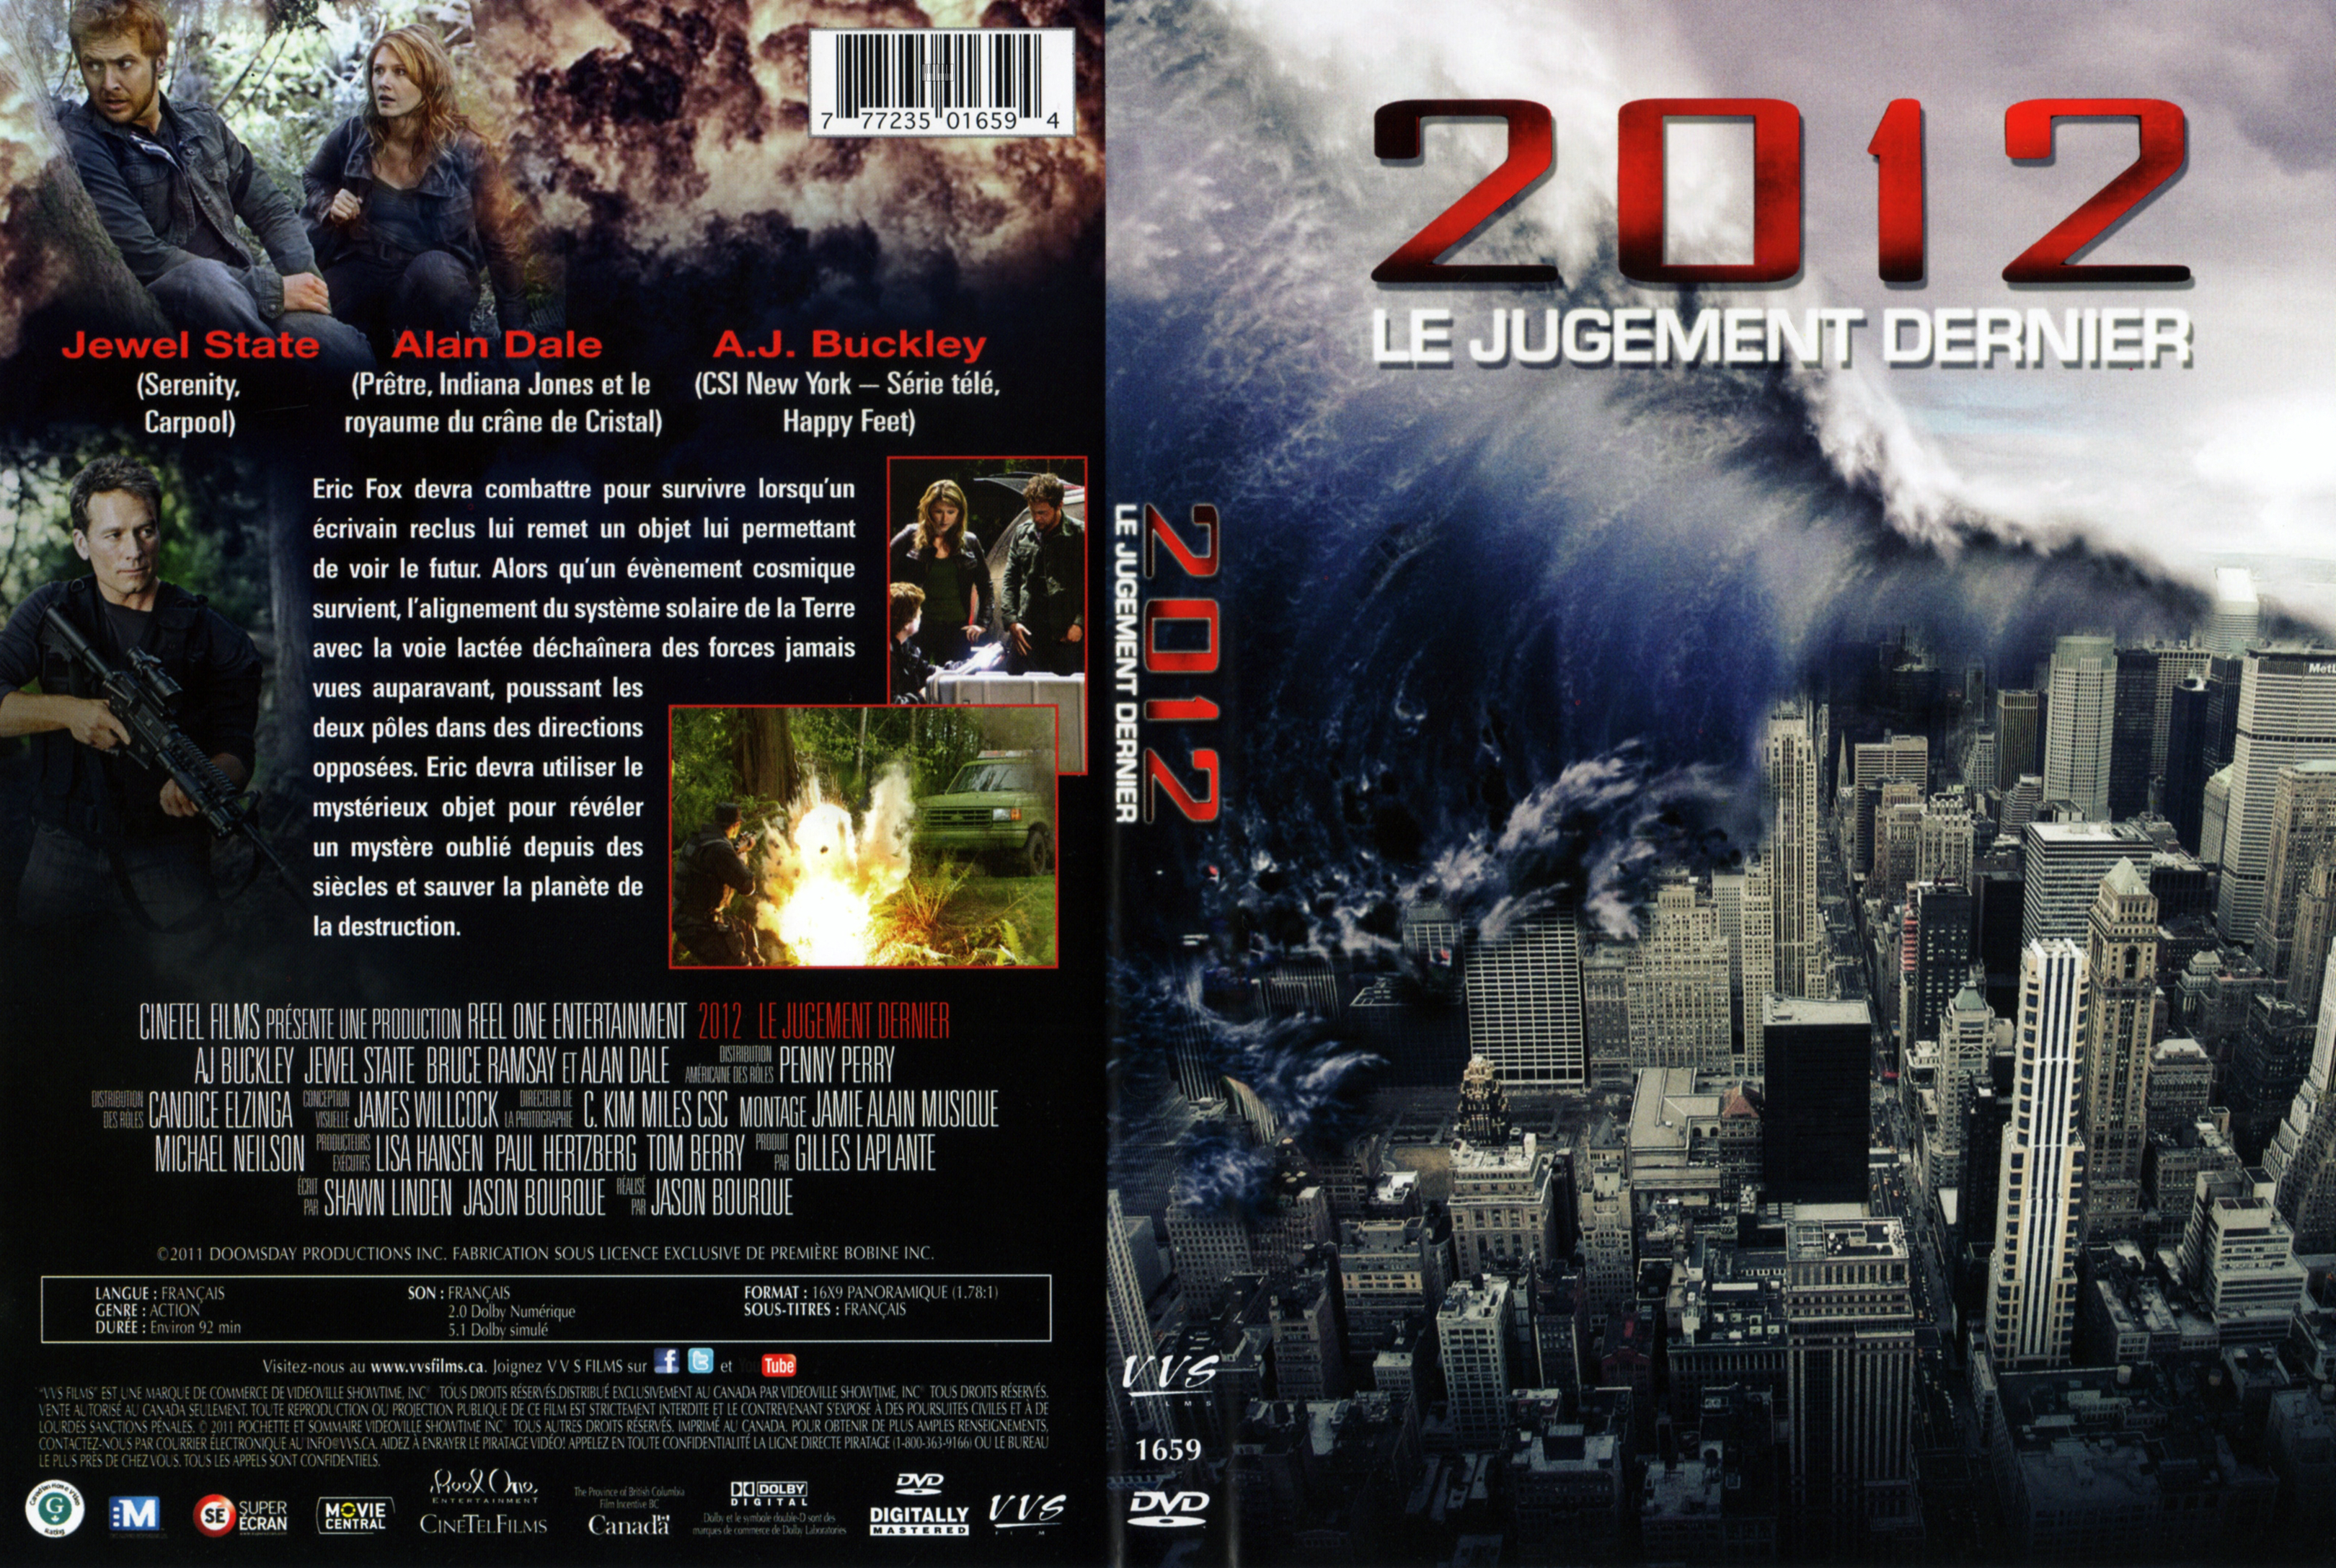 Jaquette DVD 2012 Le jugement dernier